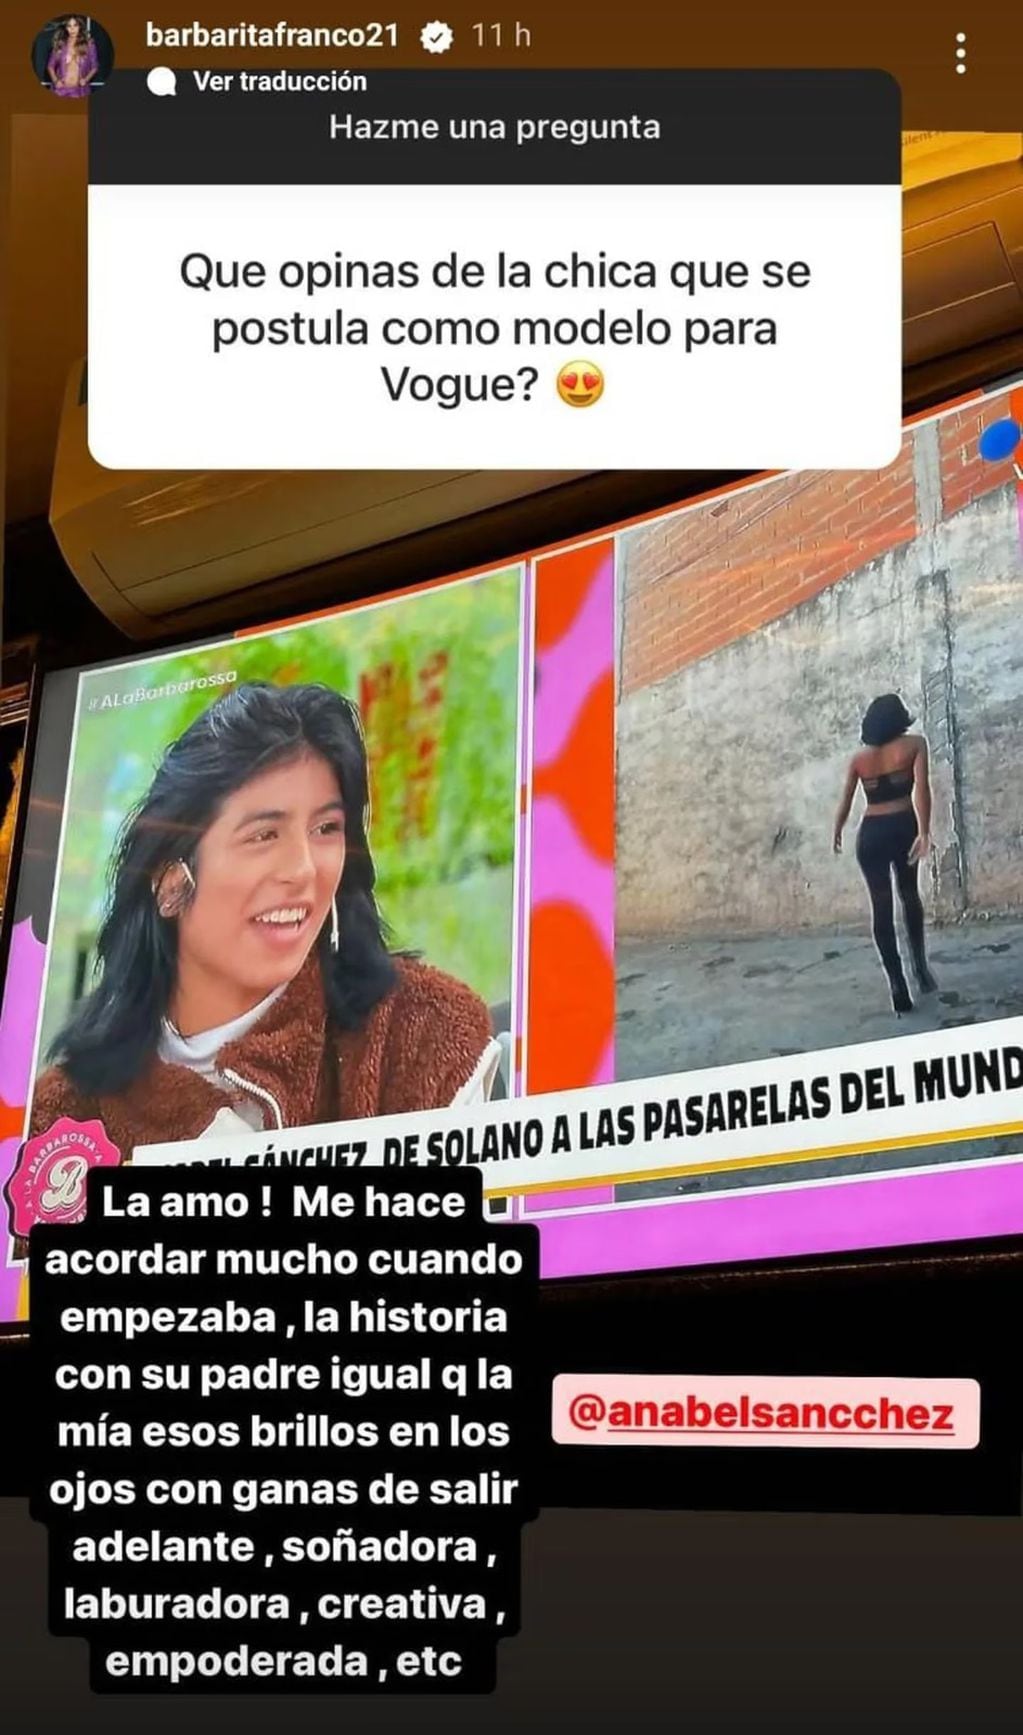 El comentario de Barby Franco apoyando a Anabel Sánchez